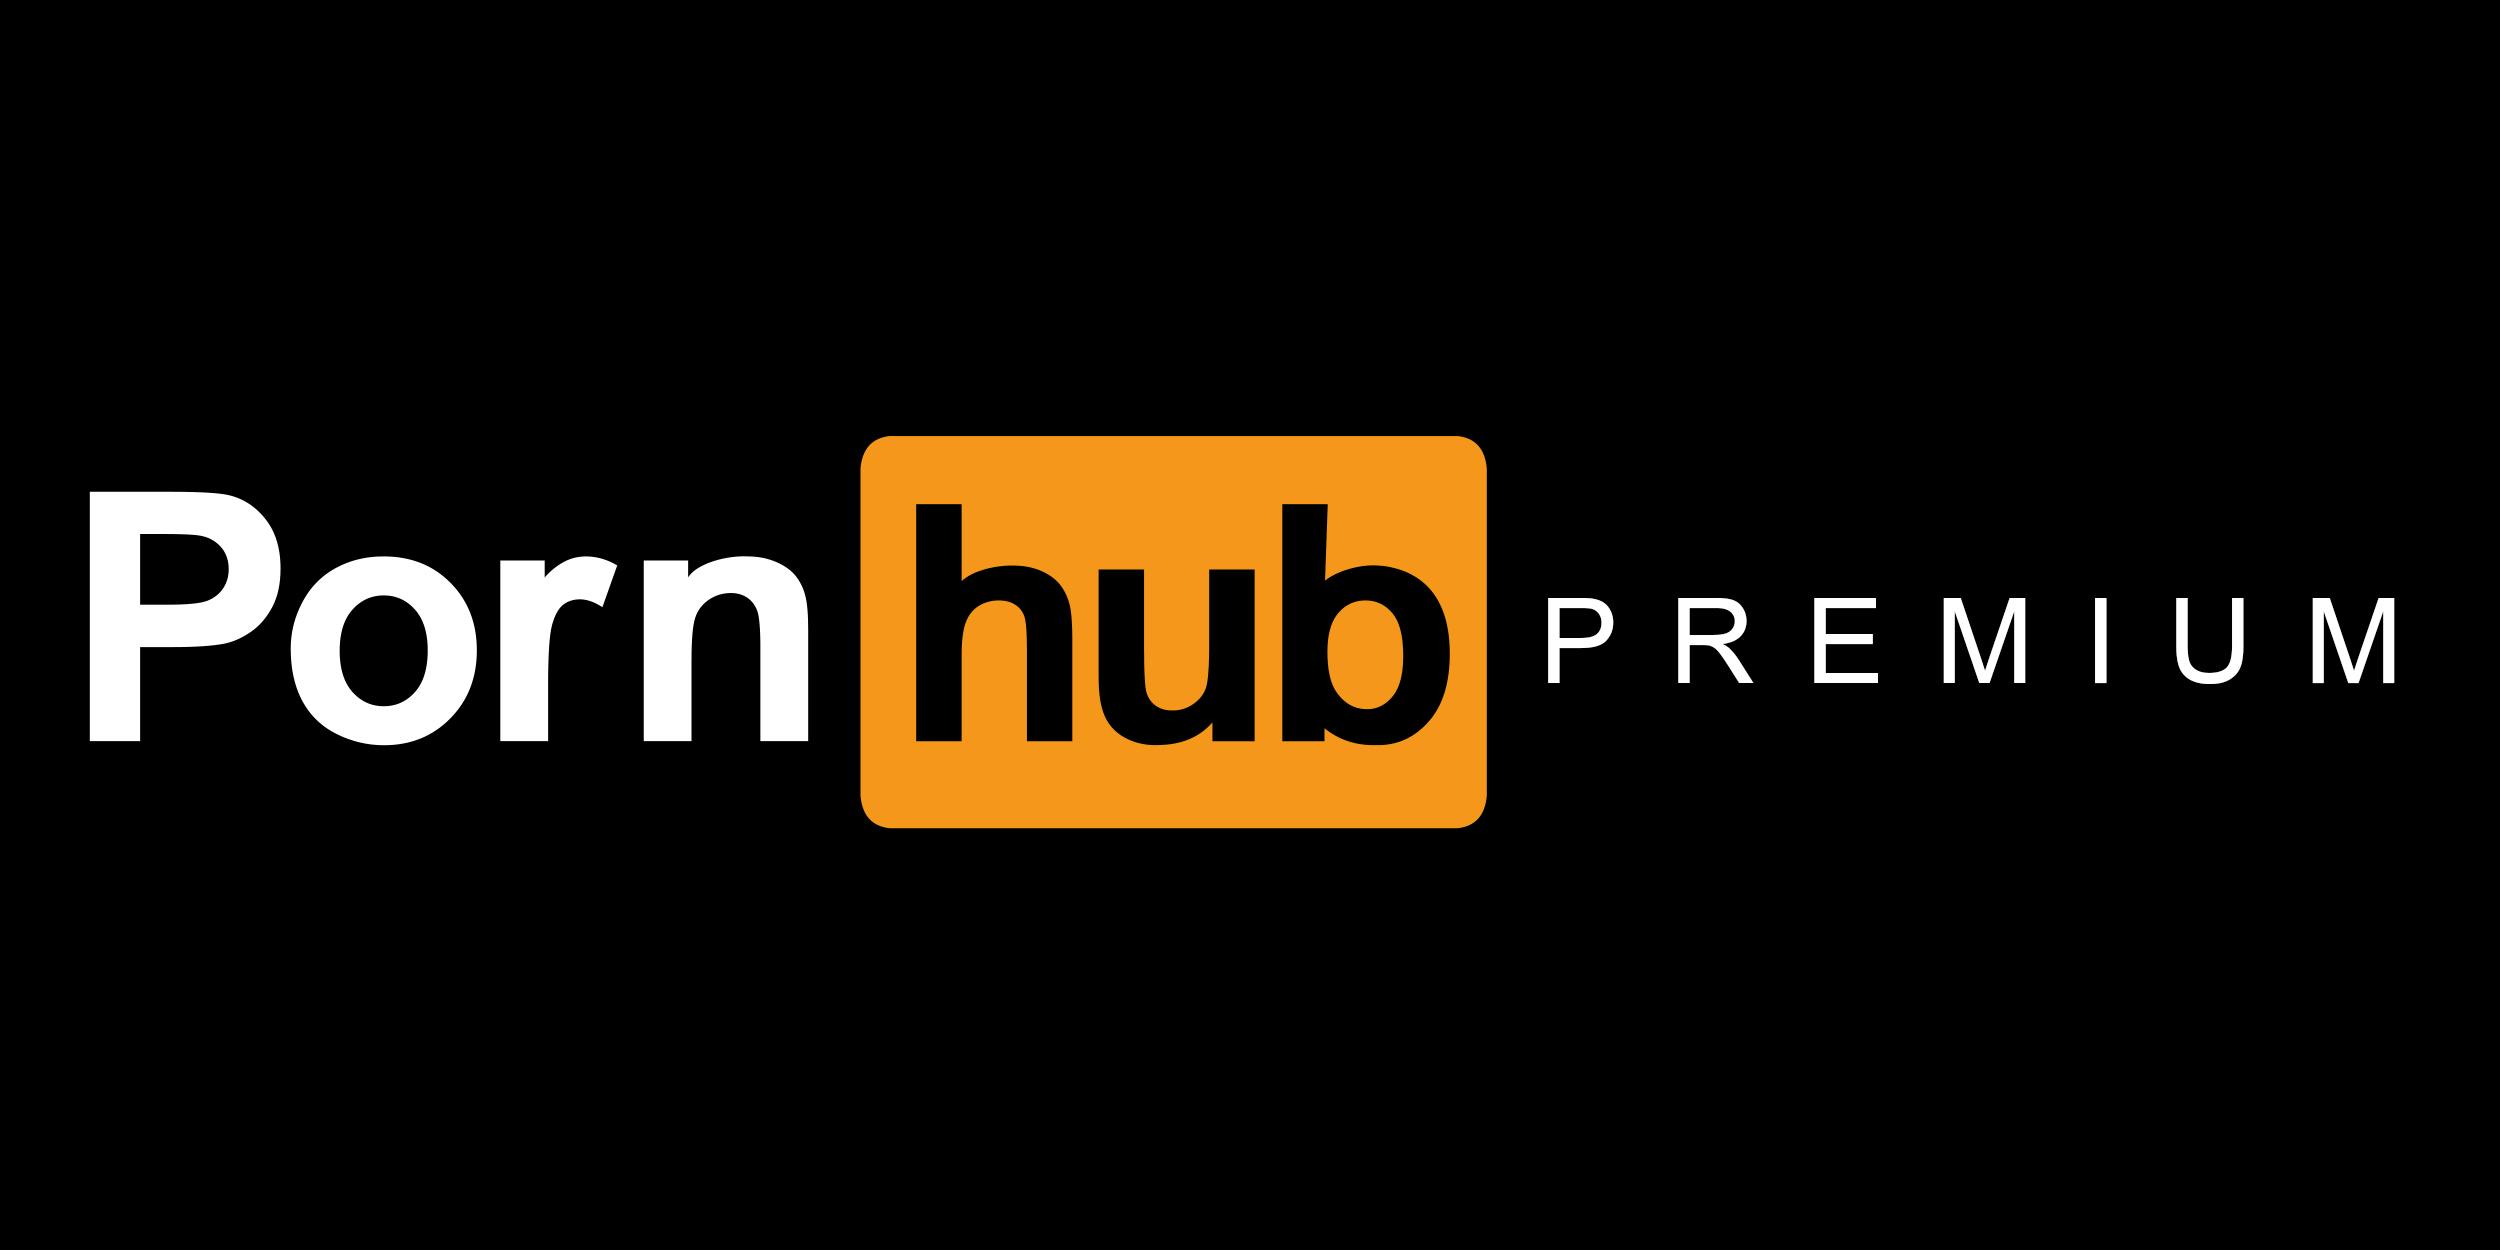 Pon hub free Free Porn